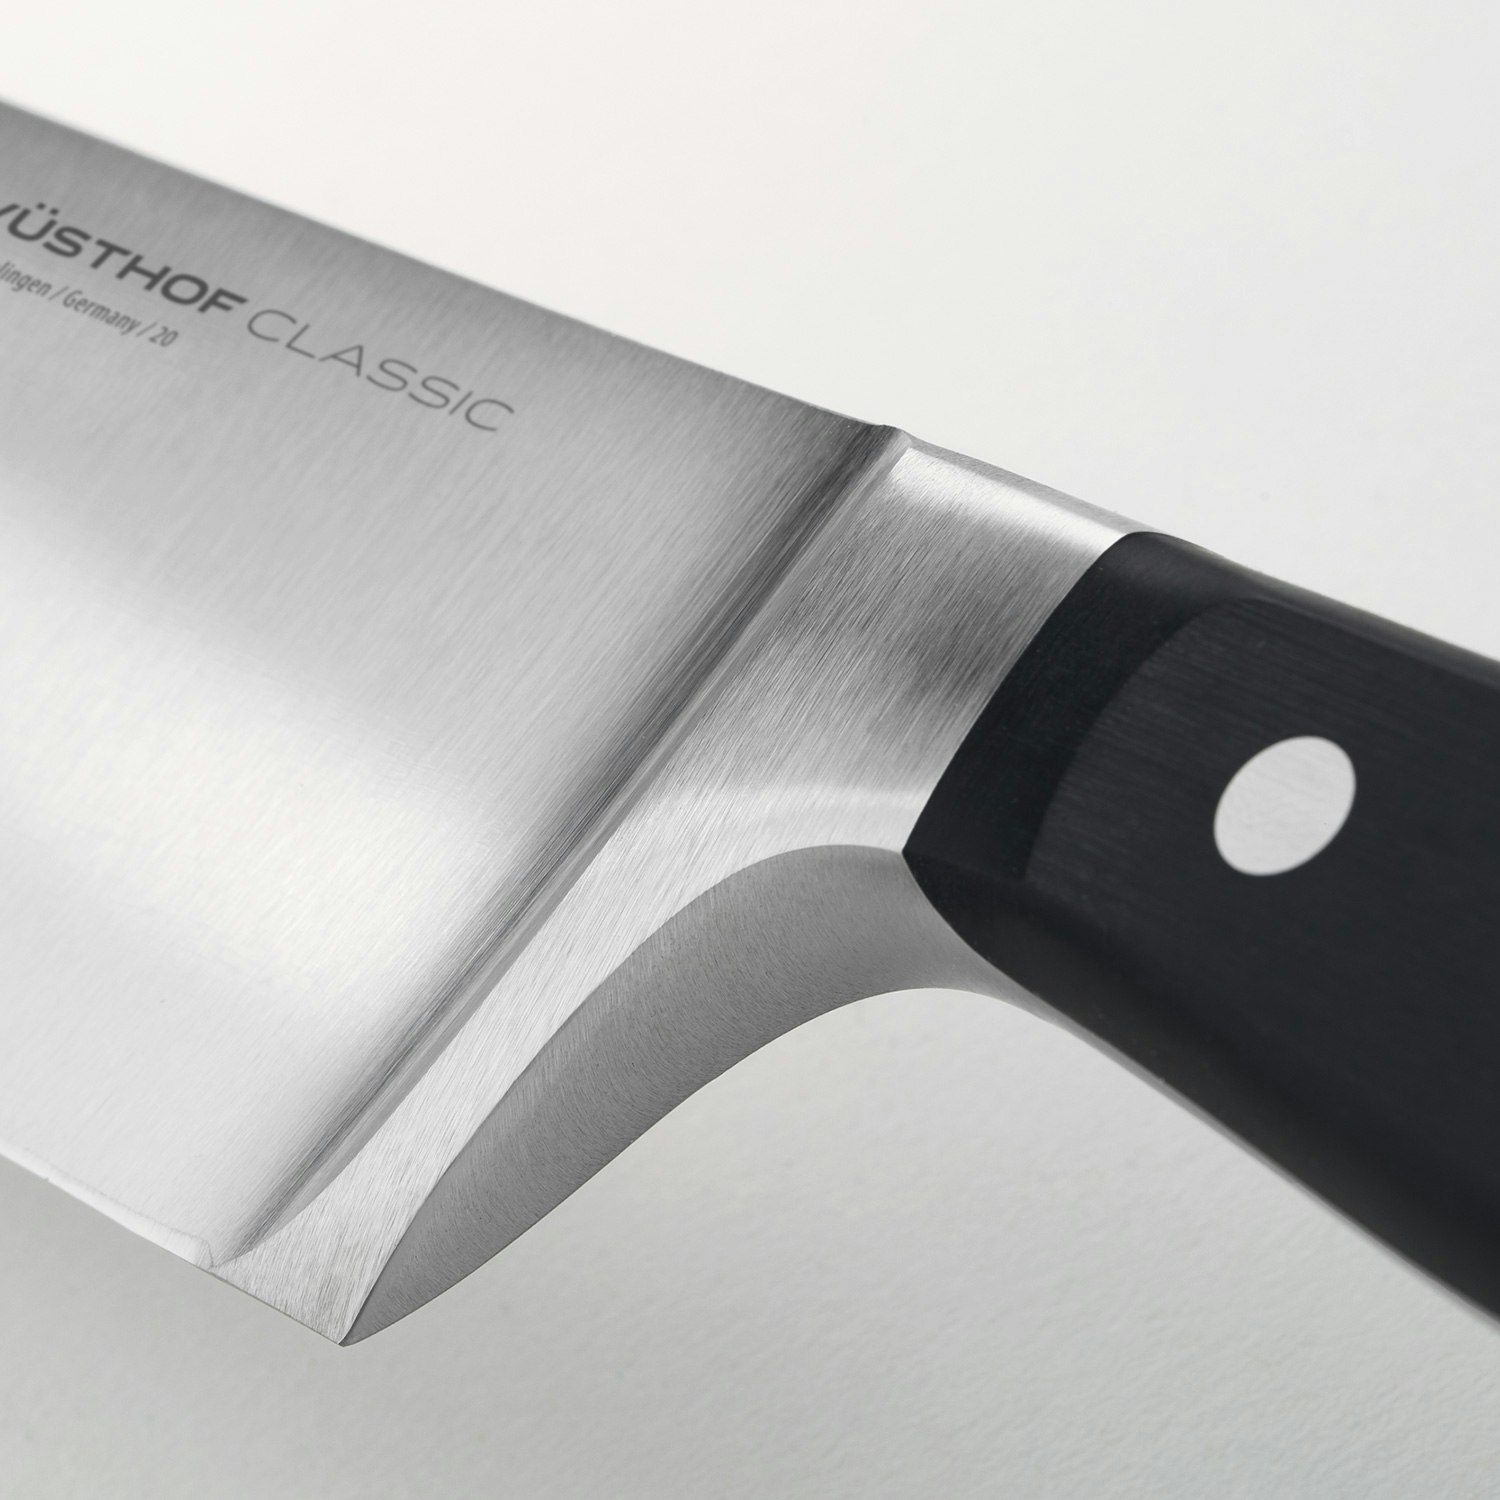 https://royaldesign.com/image/2/wusthof-classic-knife-set-3-pack-2